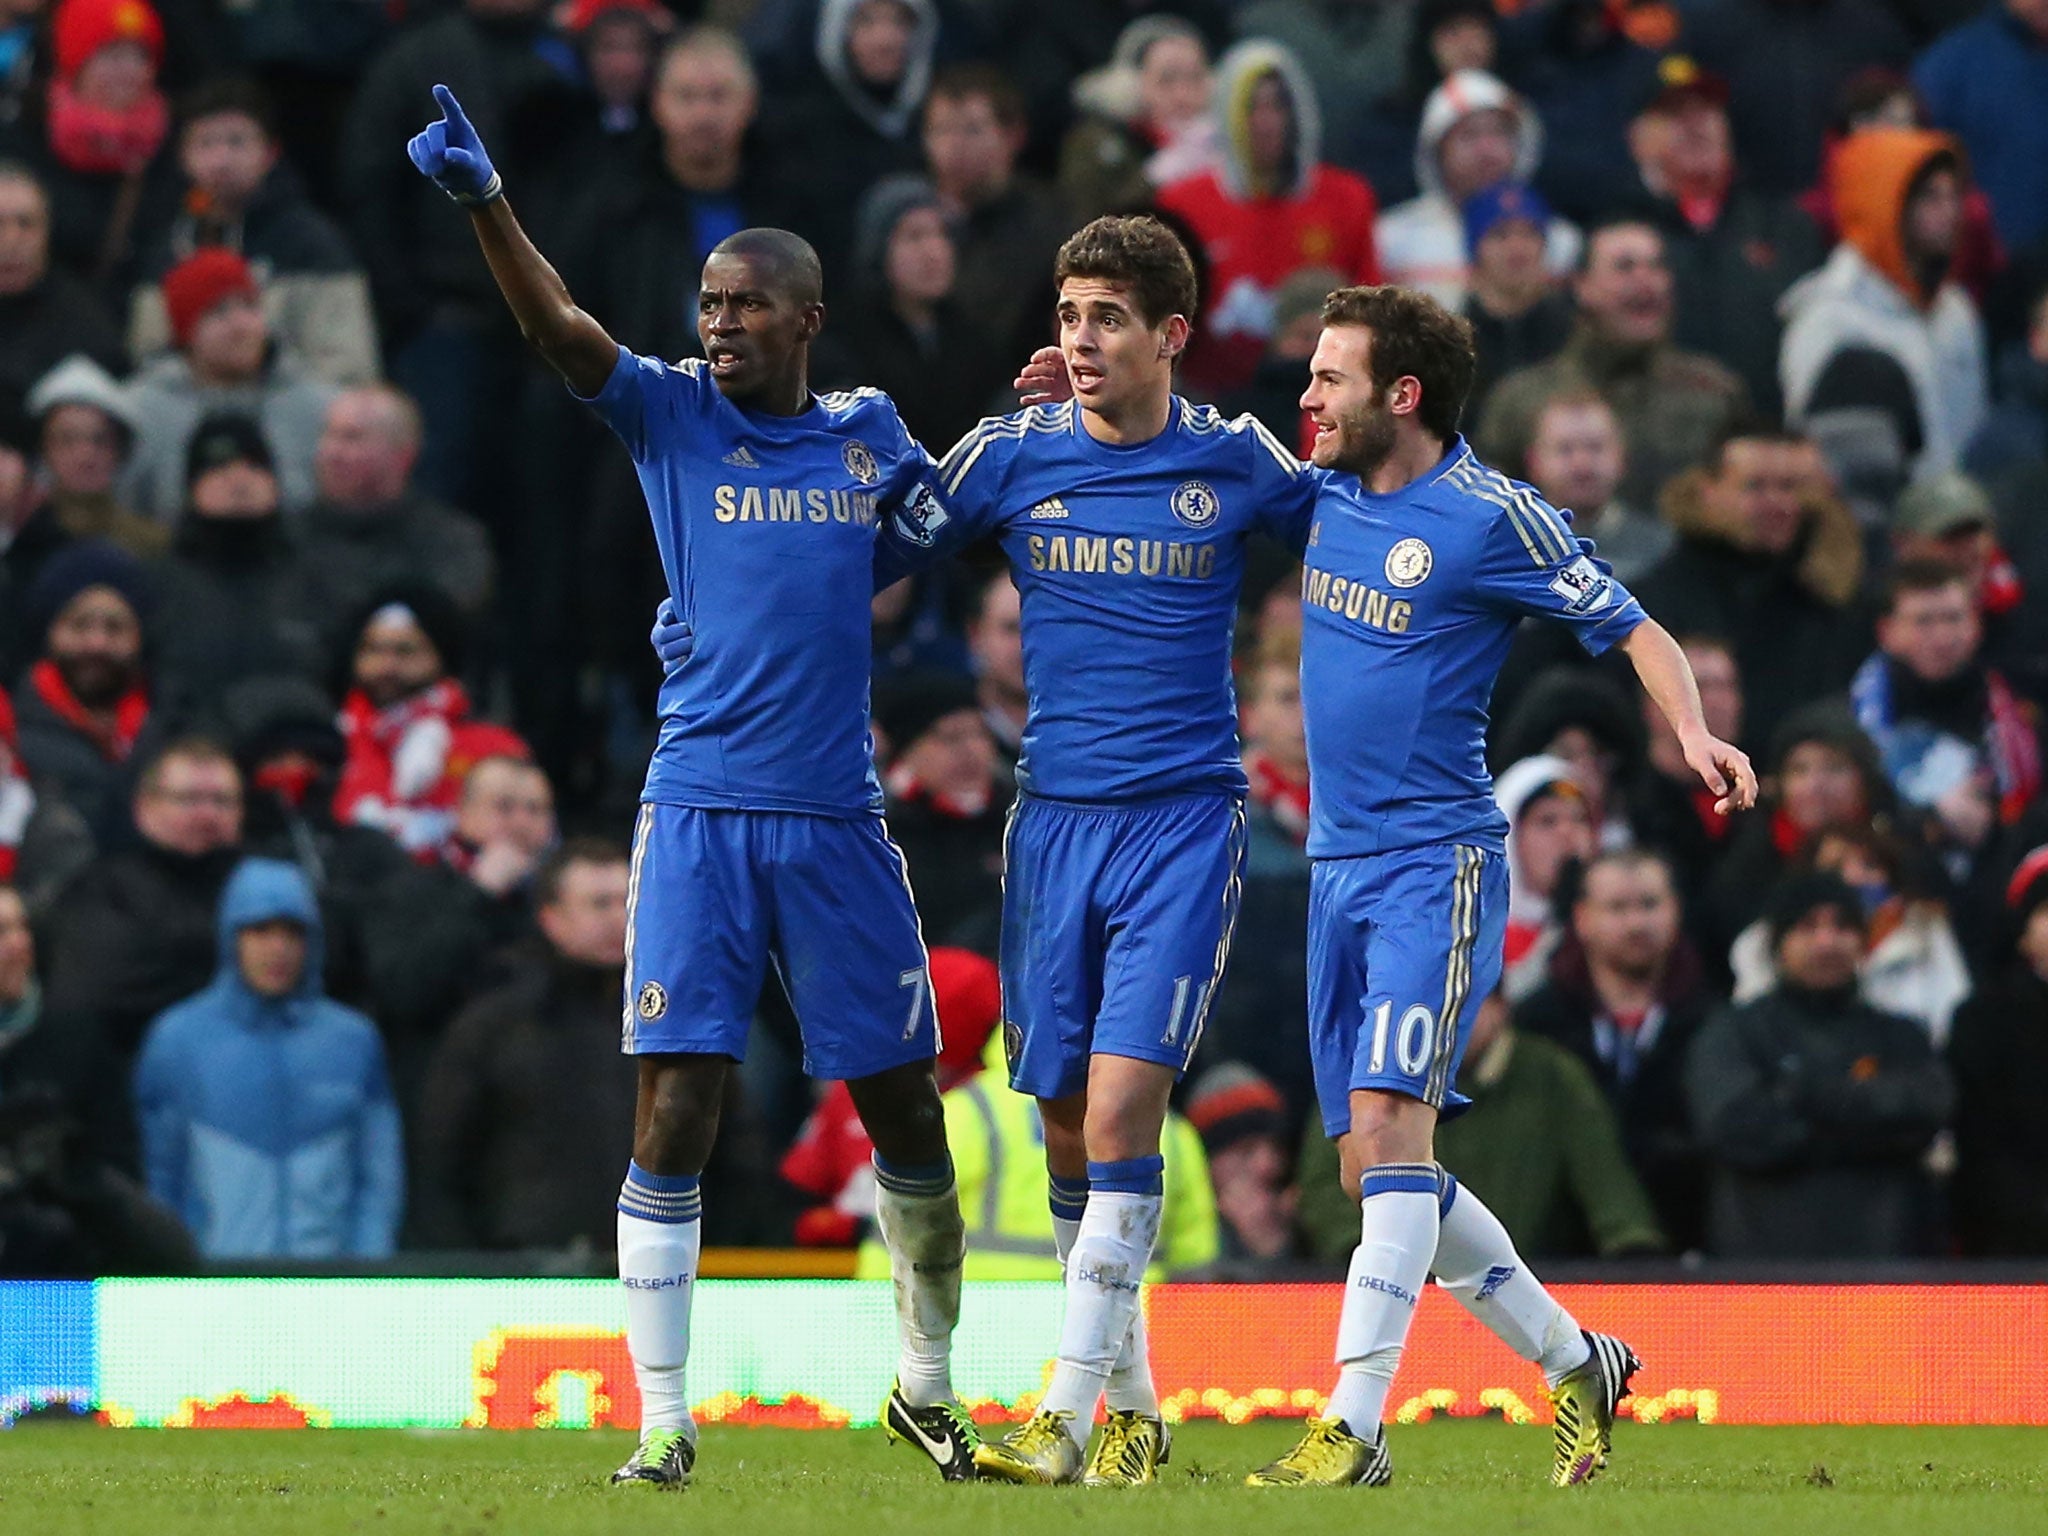 Ramires (l) of Chelsea celebrates scoring his team's second goal with team-mates Cesar Azpilicueta and Juan Mata (r)